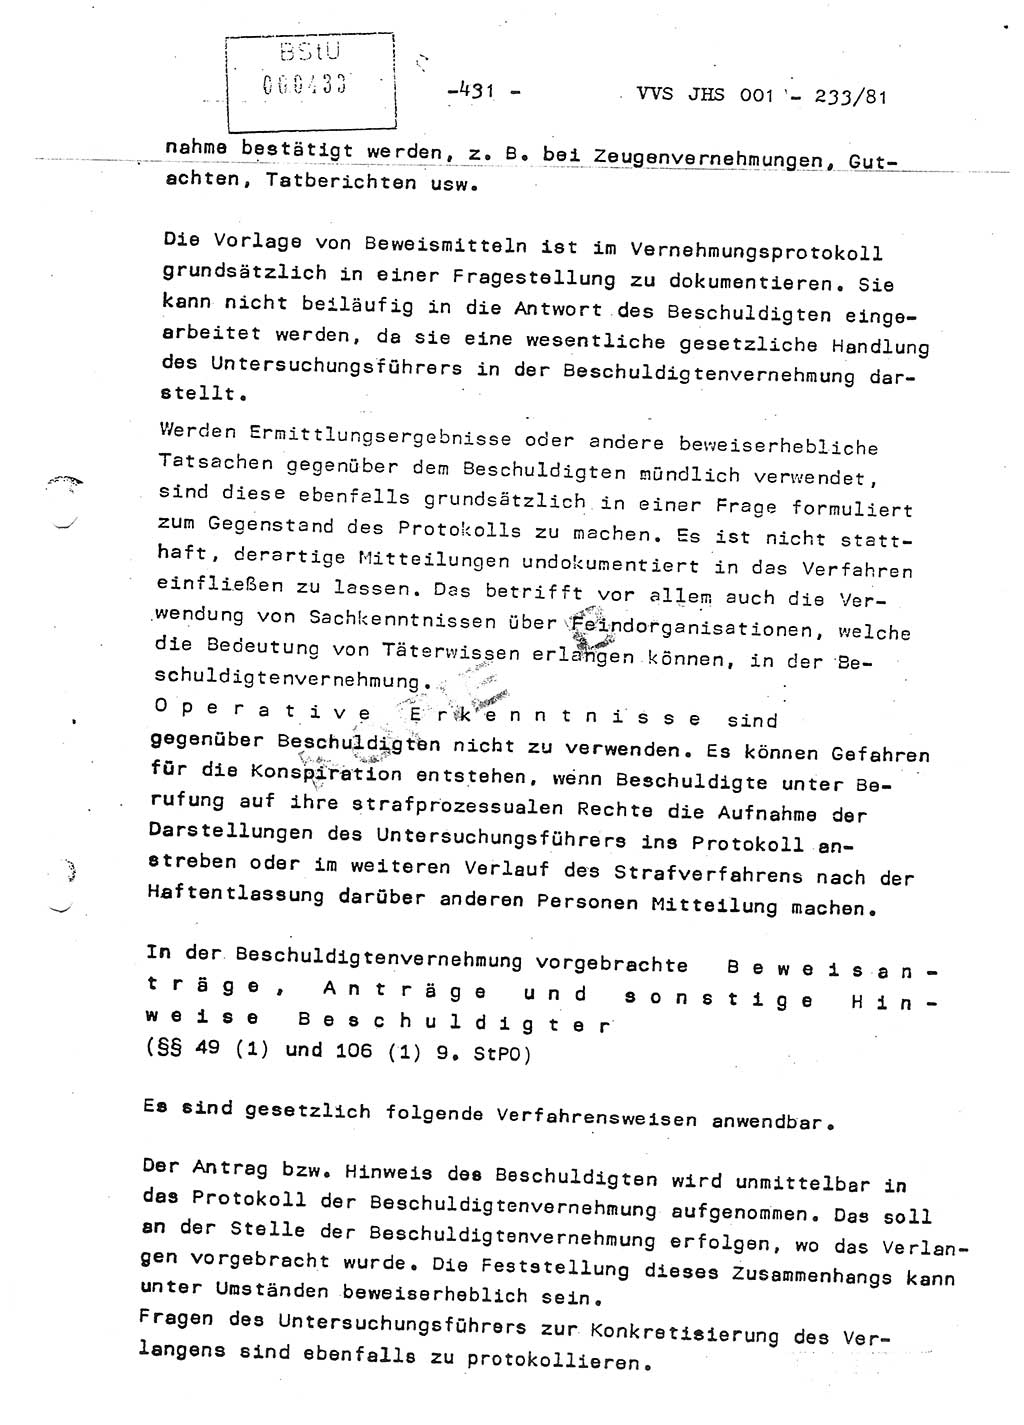 Dissertation Oberstleutnant Horst Zank (JHS), Oberstleutnant Dr. Karl-Heinz Knoblauch (JHS), Oberstleutnant Gustav-Adolf Kowalewski (HA Ⅸ), Oberstleutnant Wolfgang Plötner (HA Ⅸ), Ministerium für Staatssicherheit (MfS) [Deutsche Demokratische Republik (DDR)], Juristische Hochschule (JHS), Vertrauliche Verschlußsache (VVS) o001-233/81, Potsdam 1981, Blatt 431 (Diss. MfS DDR JHS VVS o001-233/81 1981, Bl. 431)